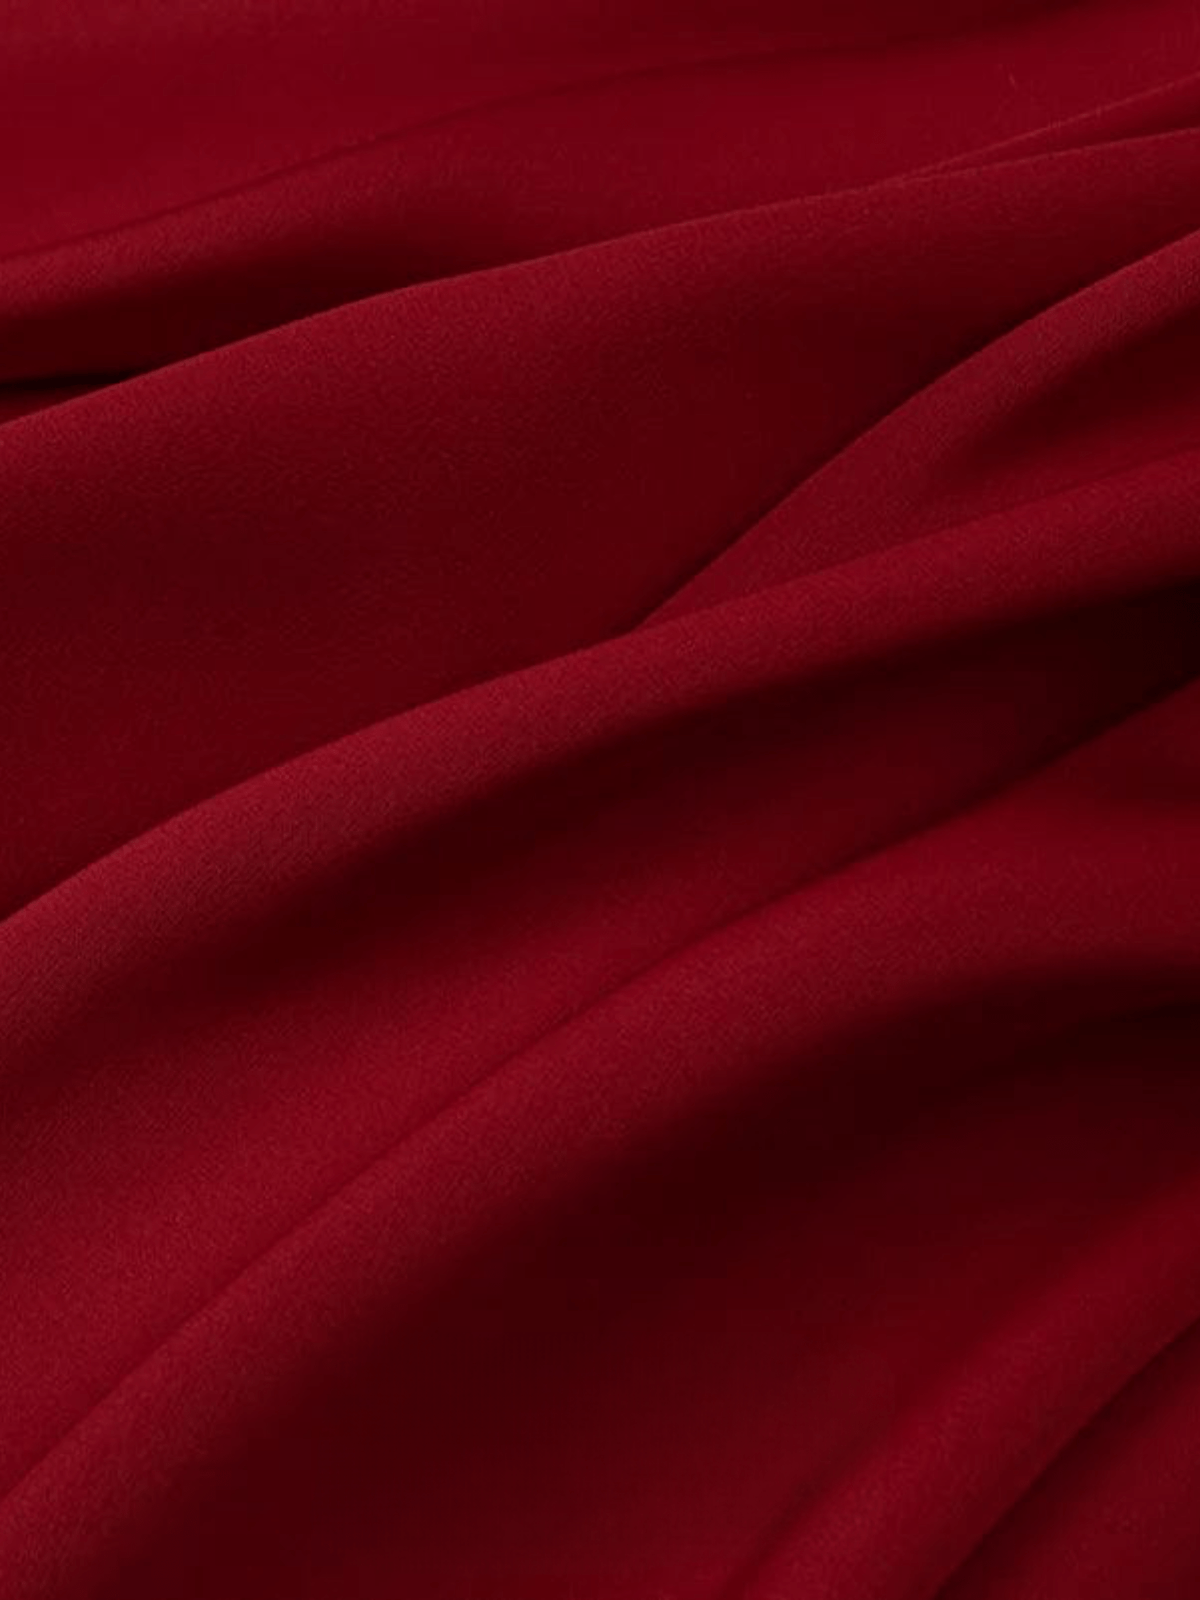 Tissu Mousseline Premium - Idéal Ponchos  Rouge Foncé / 0.5mX1.5m / 100% Polyester